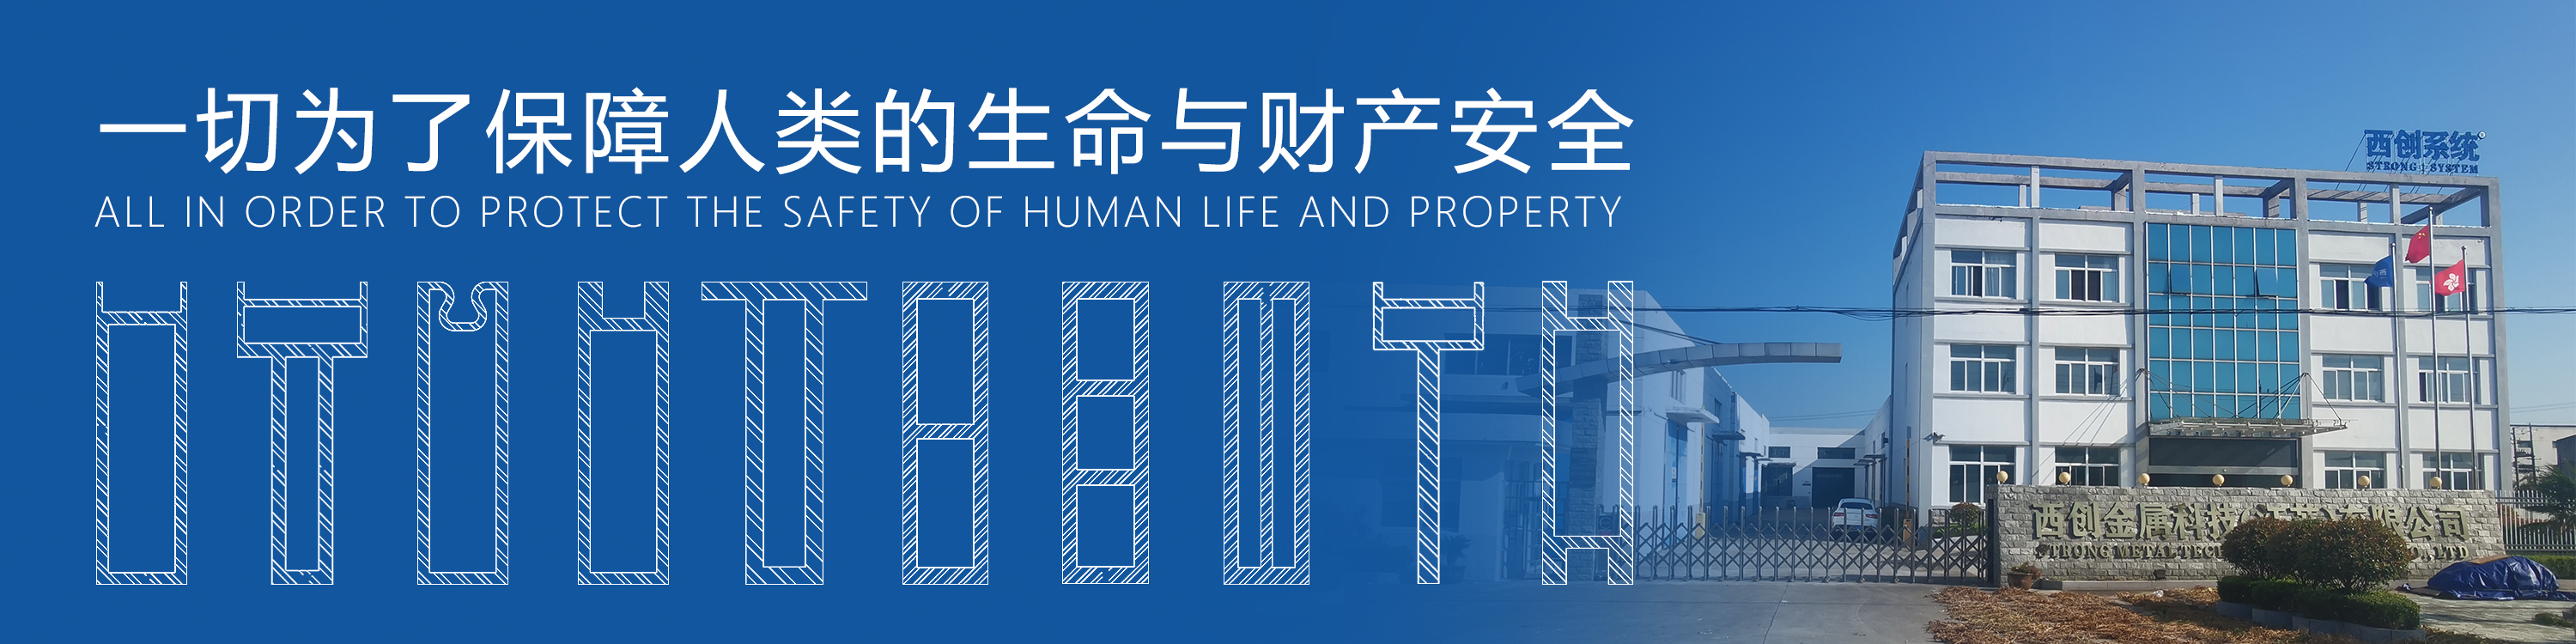 上海项目矩形、梯形精制钢采光顶系统图纸深化案例 - 西创系统(图11)